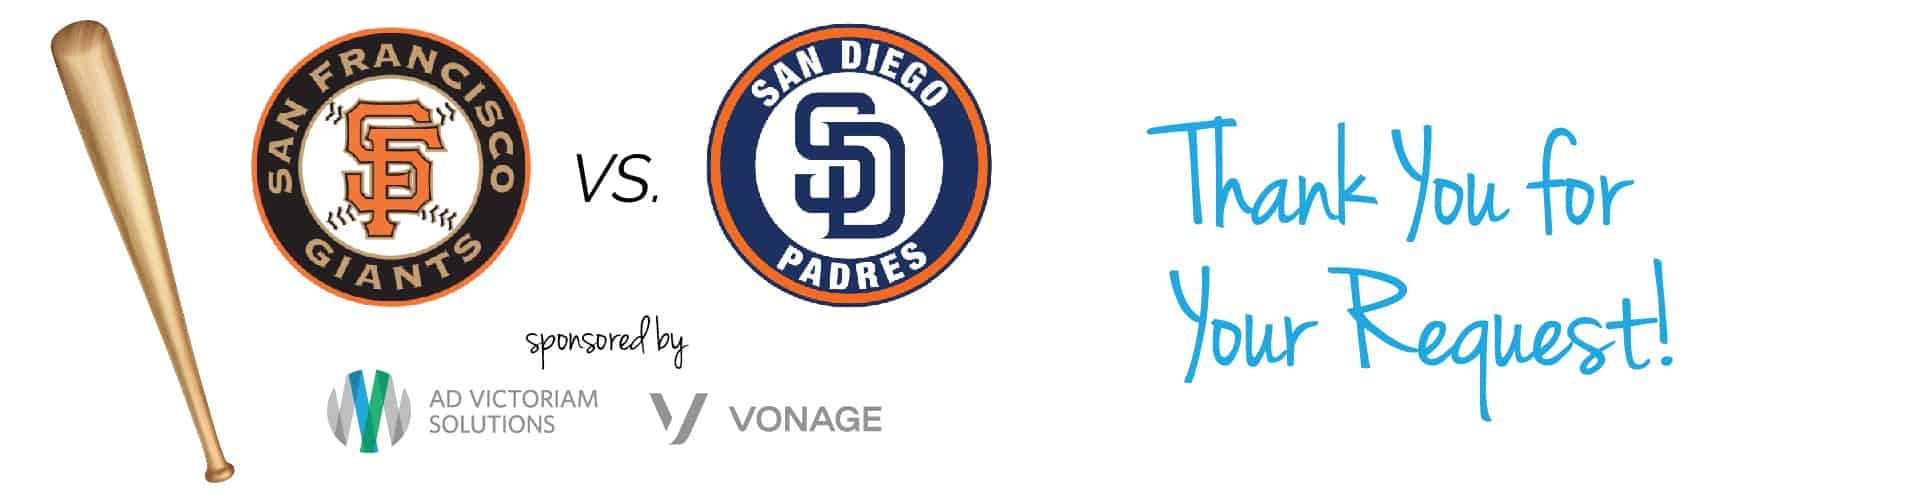 San Fran Giants Thank You